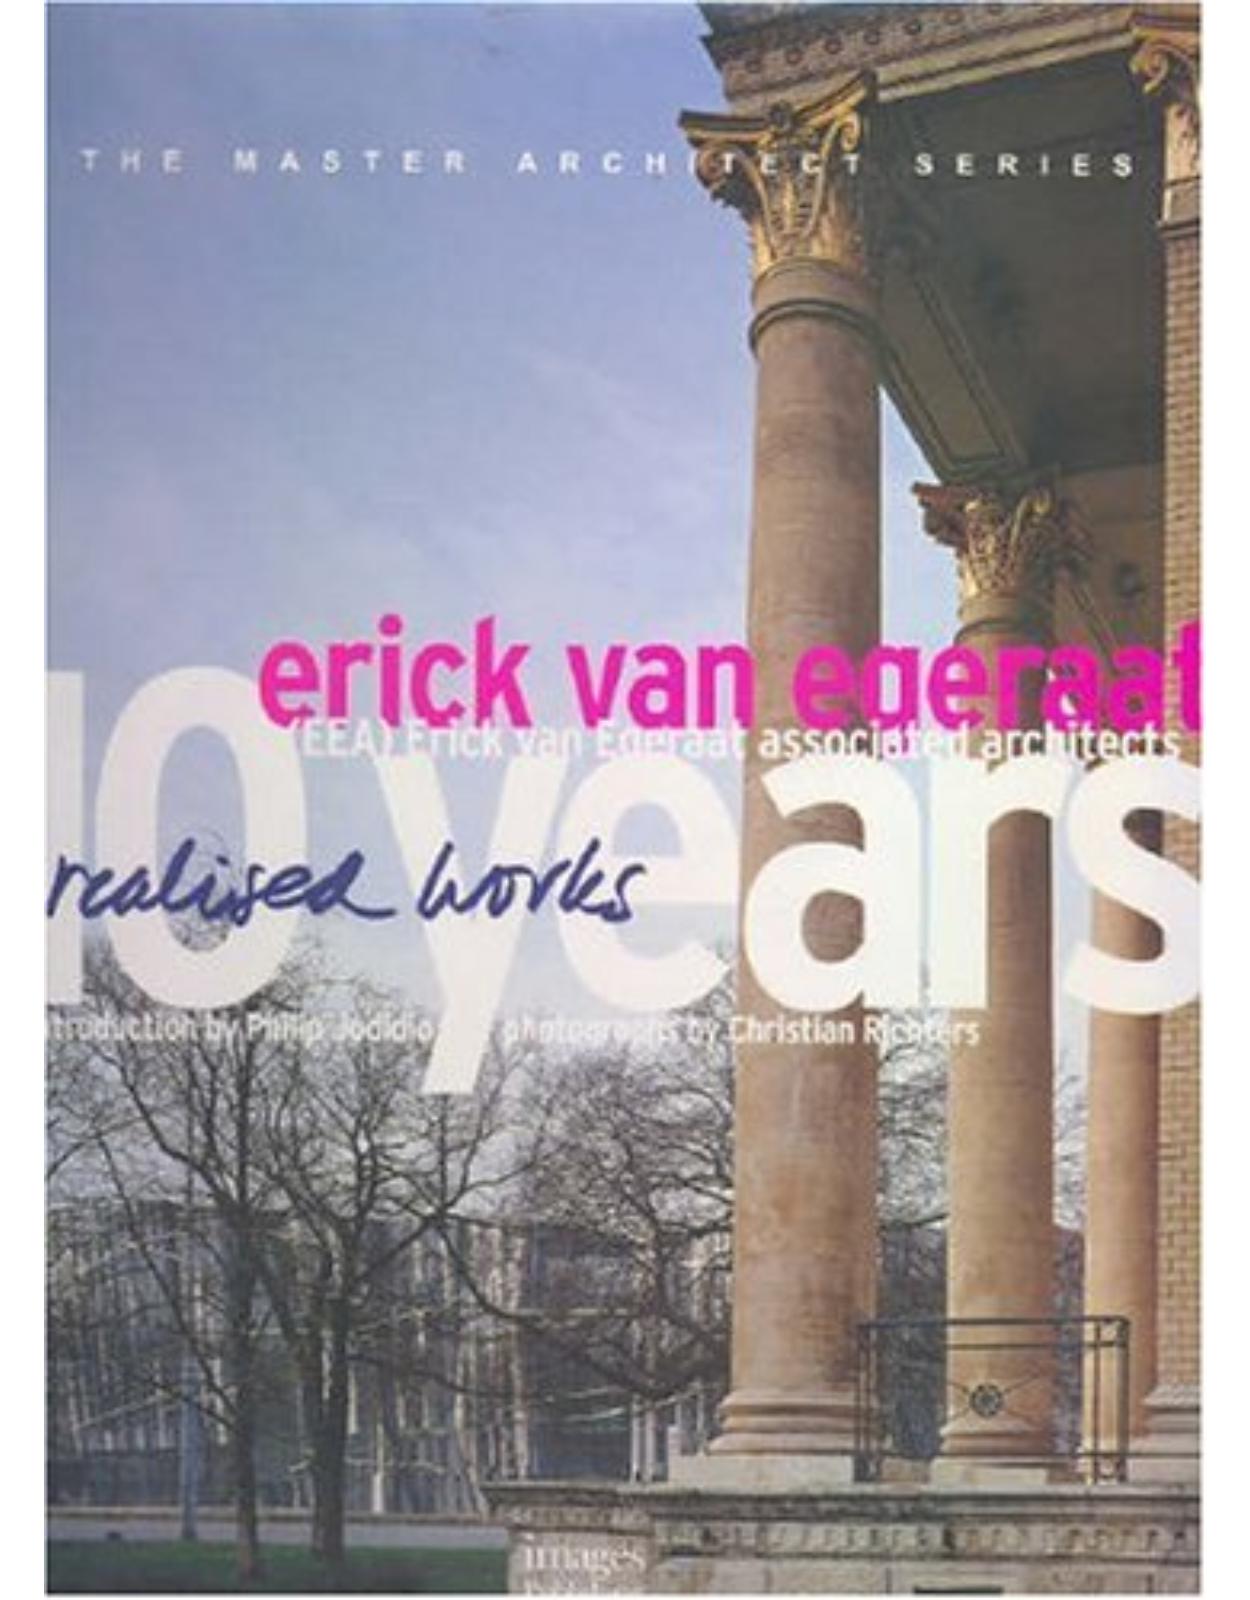 Erick Van Egeraat Associated Architects : 10 years realised works